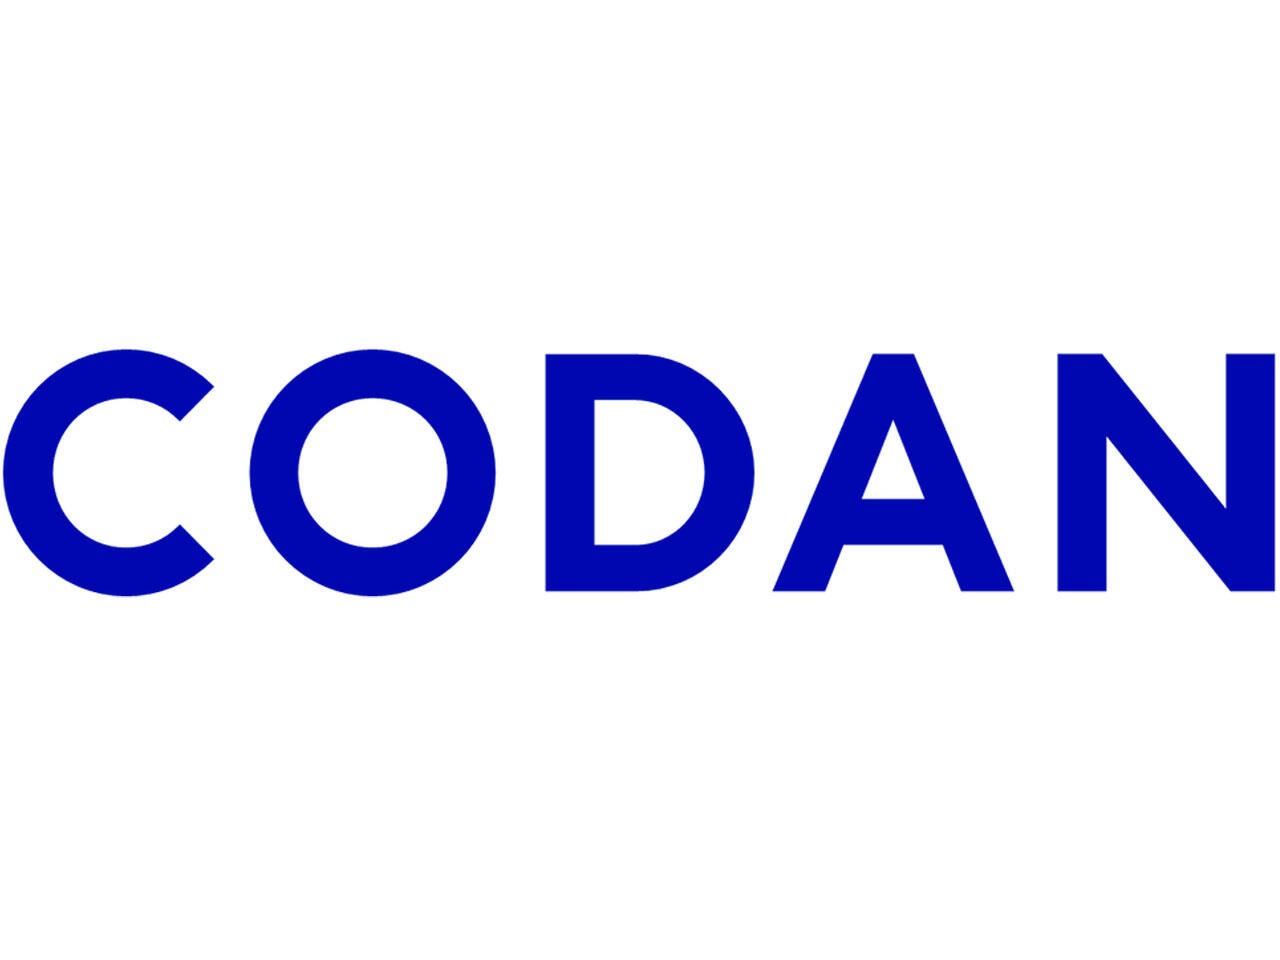 Codan Care Sundhedsforsikring Codan